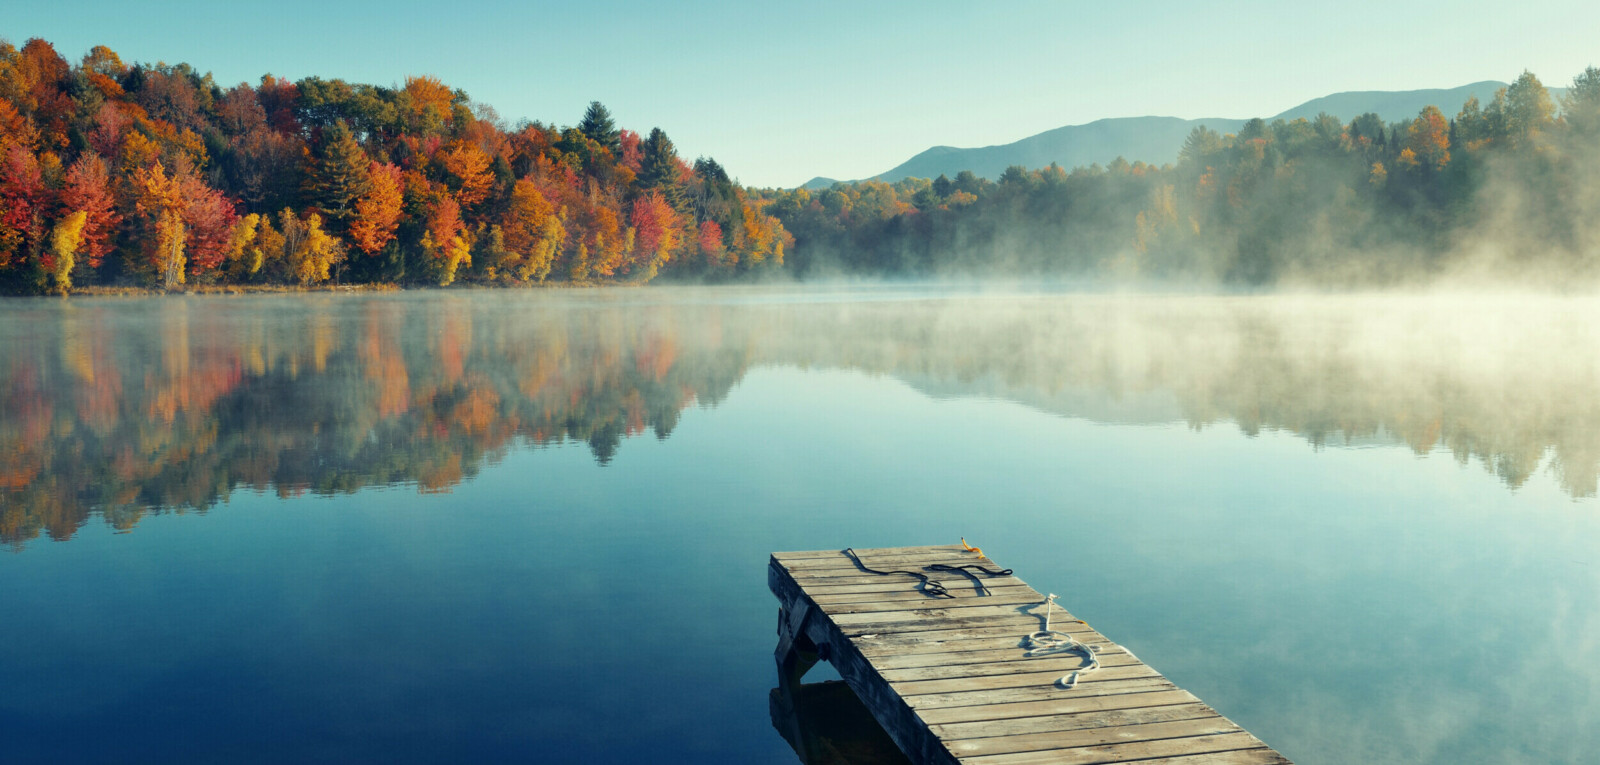 Ein einsamer Steg ragt in einen nebeligen See, am anderen Ufer erkennt man einen Herbstwald.